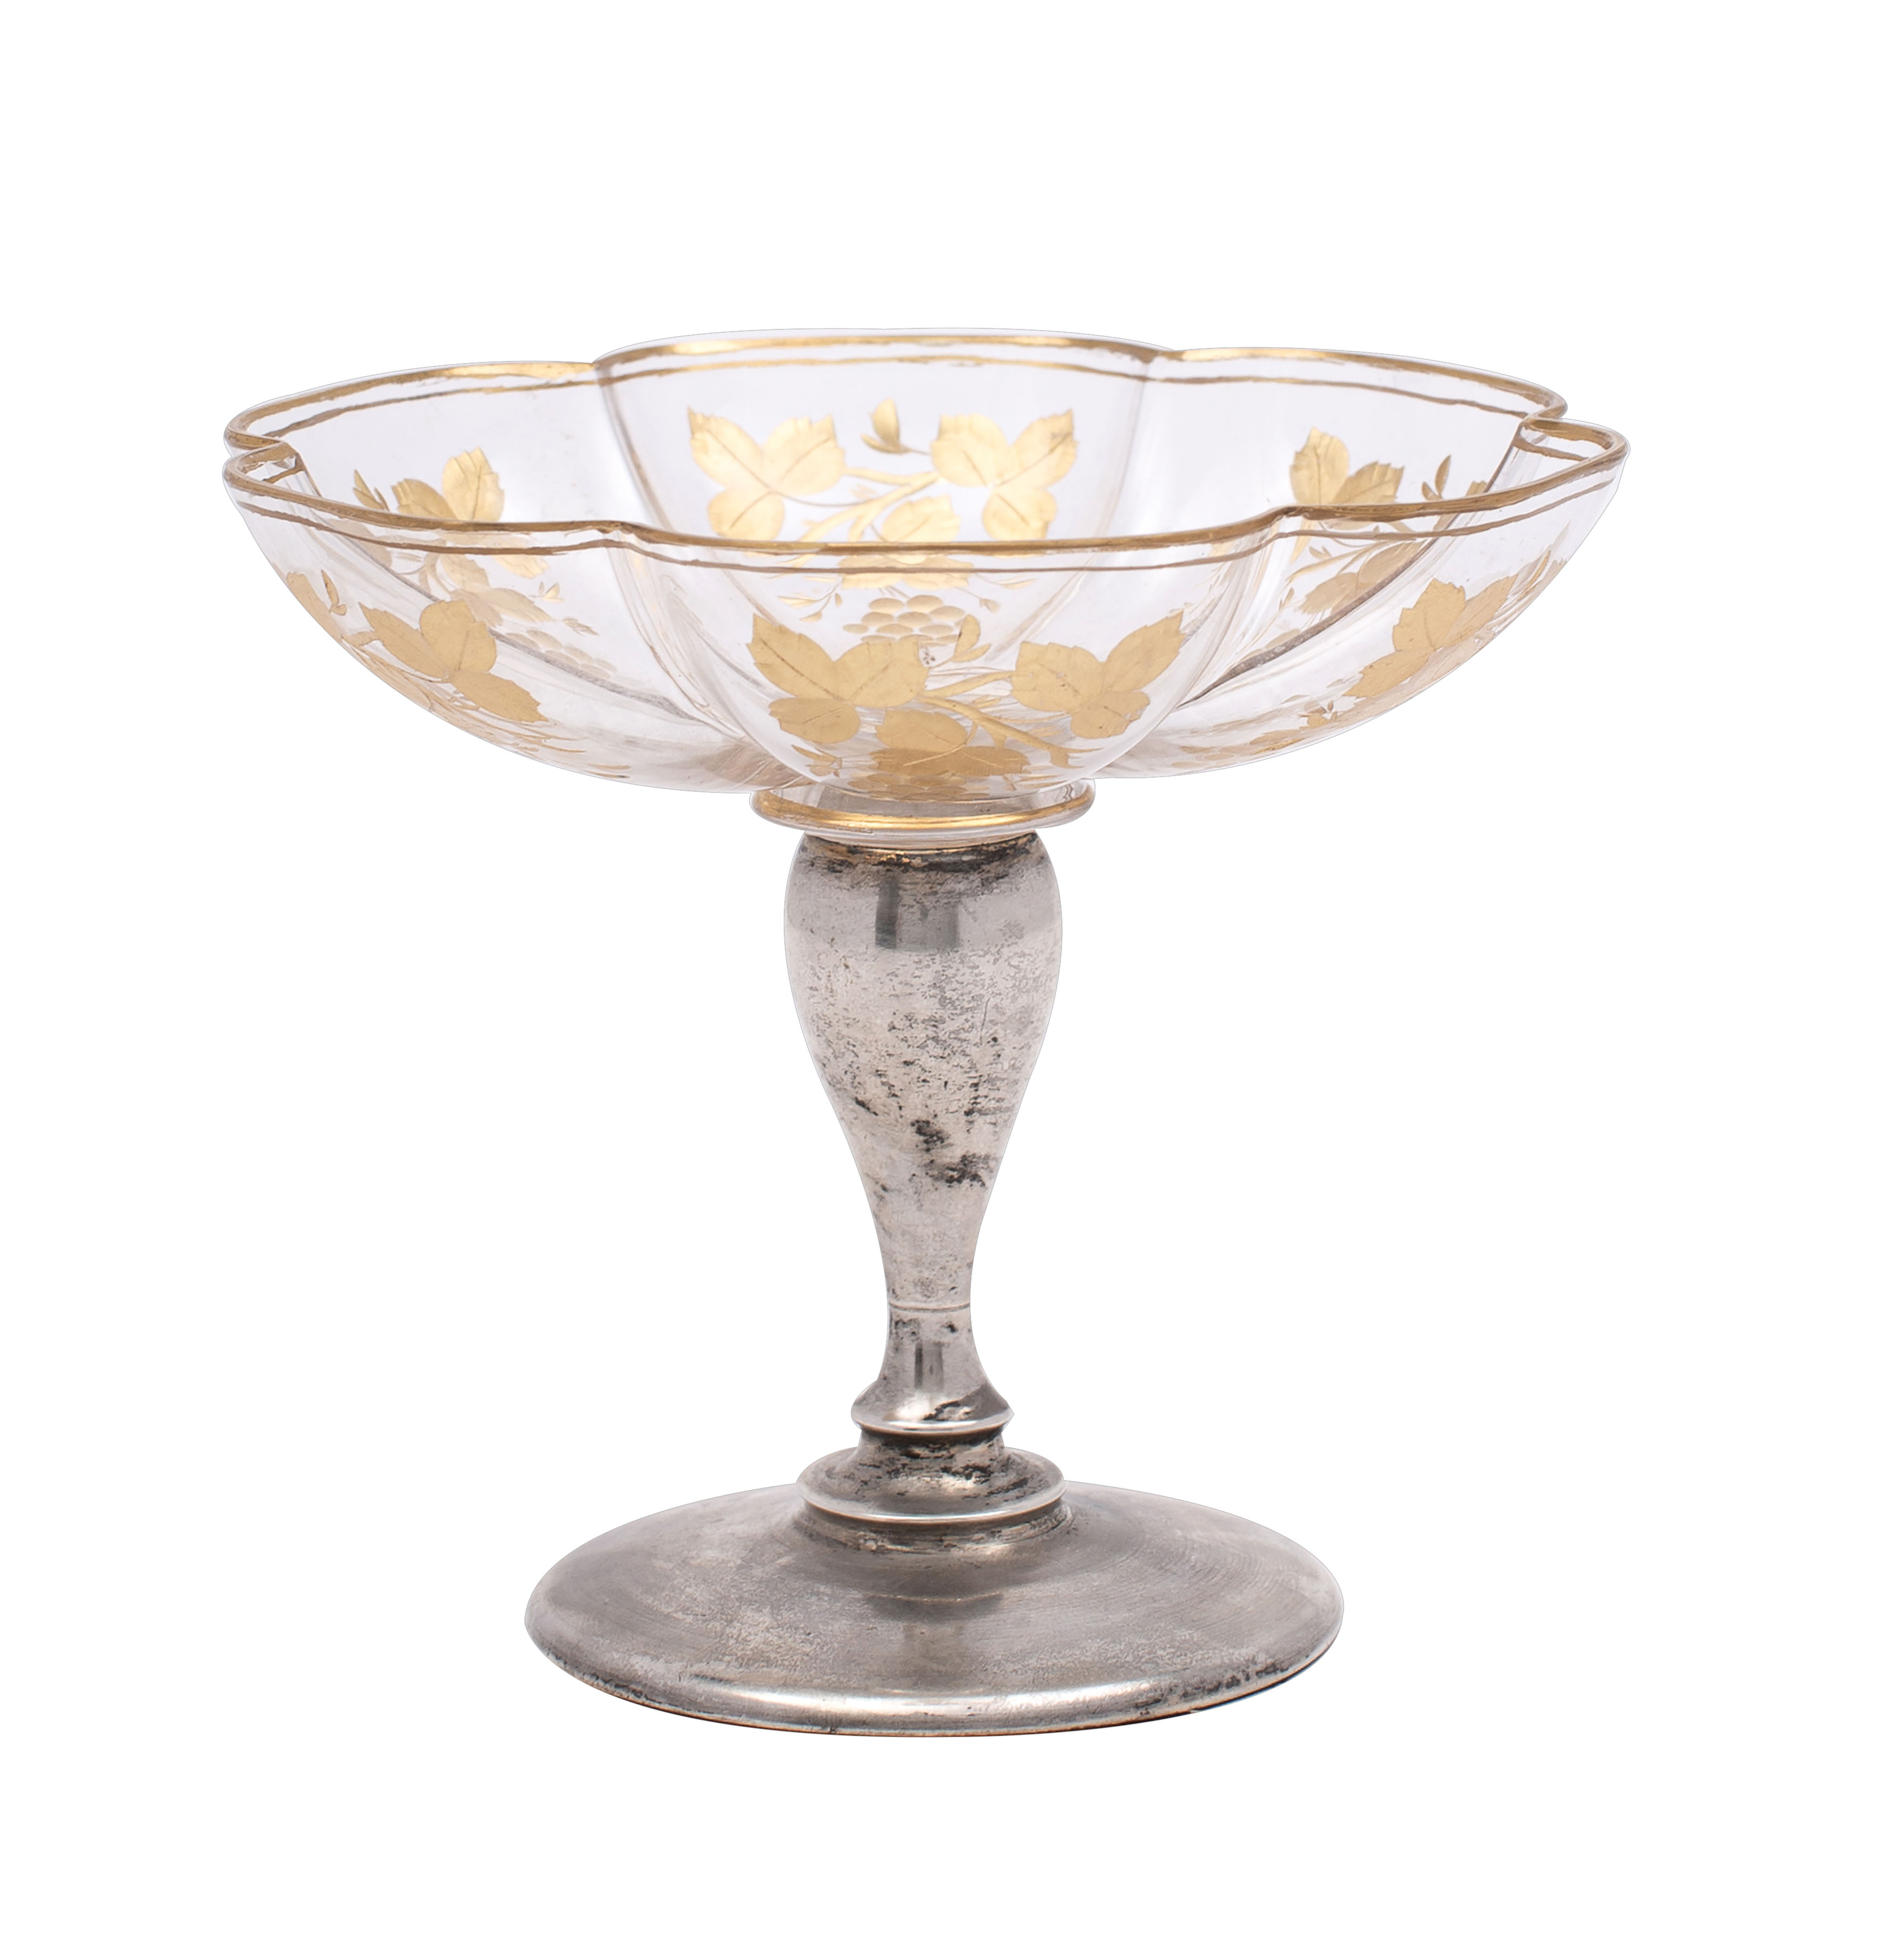 An Edward VII glass and silver pedestal bon bon dish, maker C B Thomas,